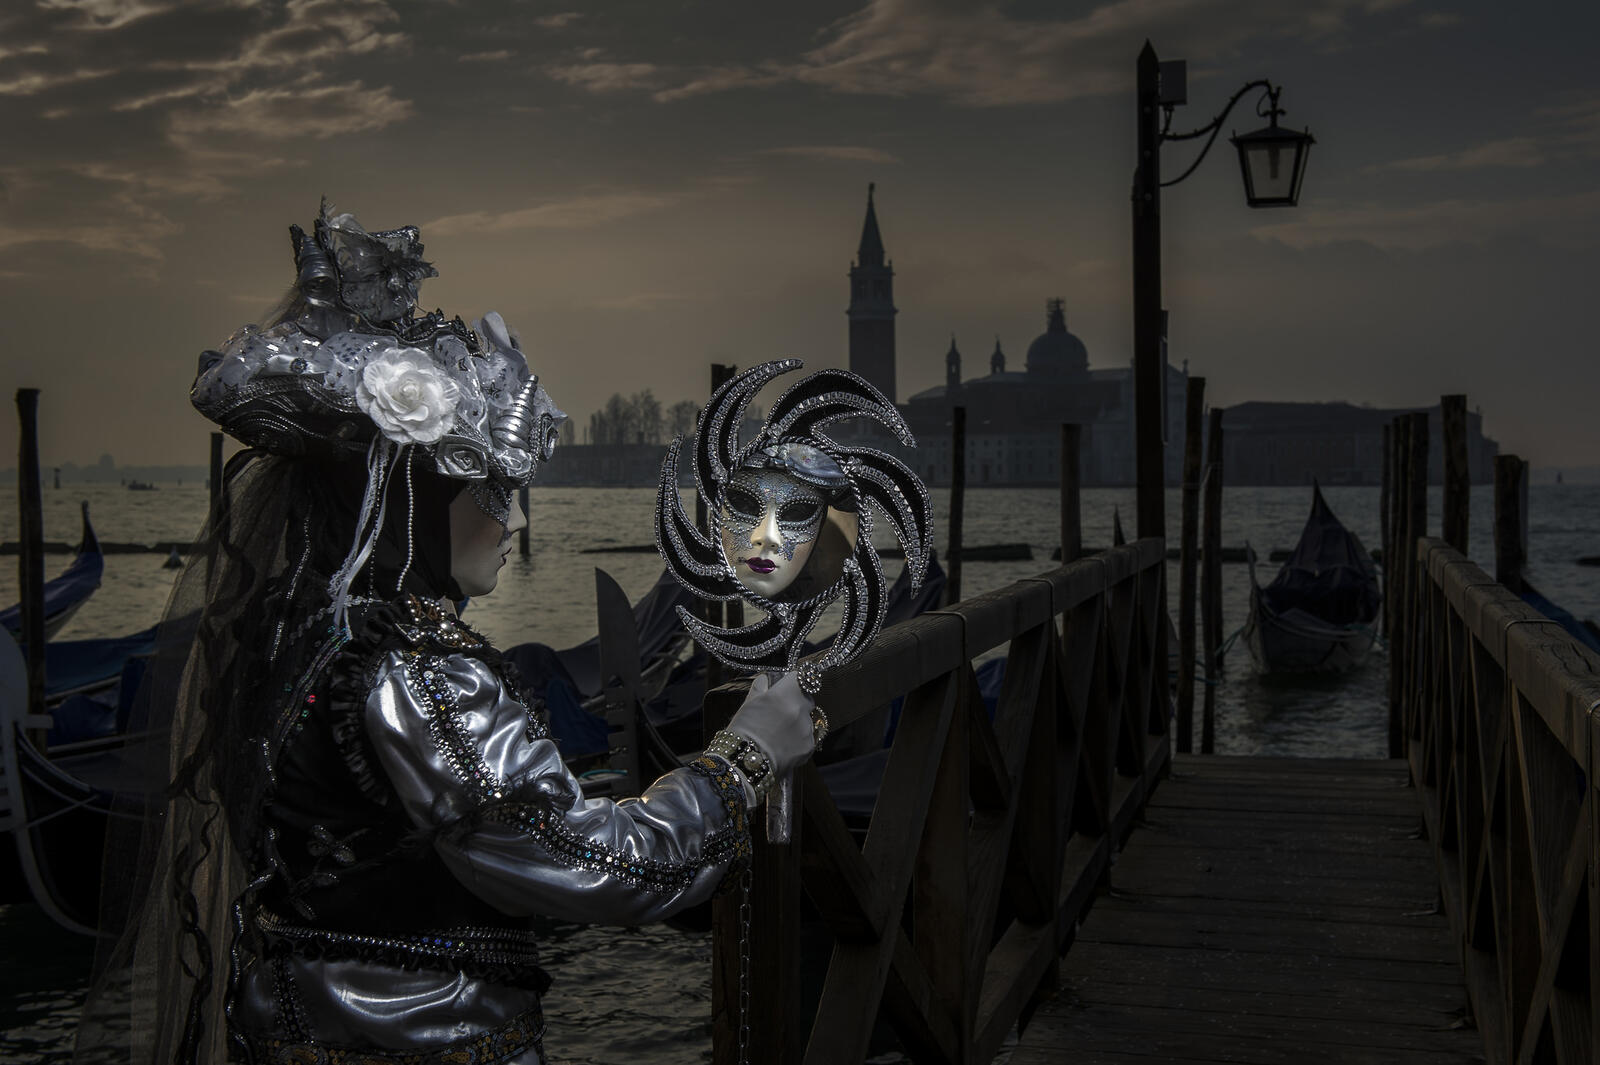 Wallpapers Venetian masks Venetian carnival masks on the desktop